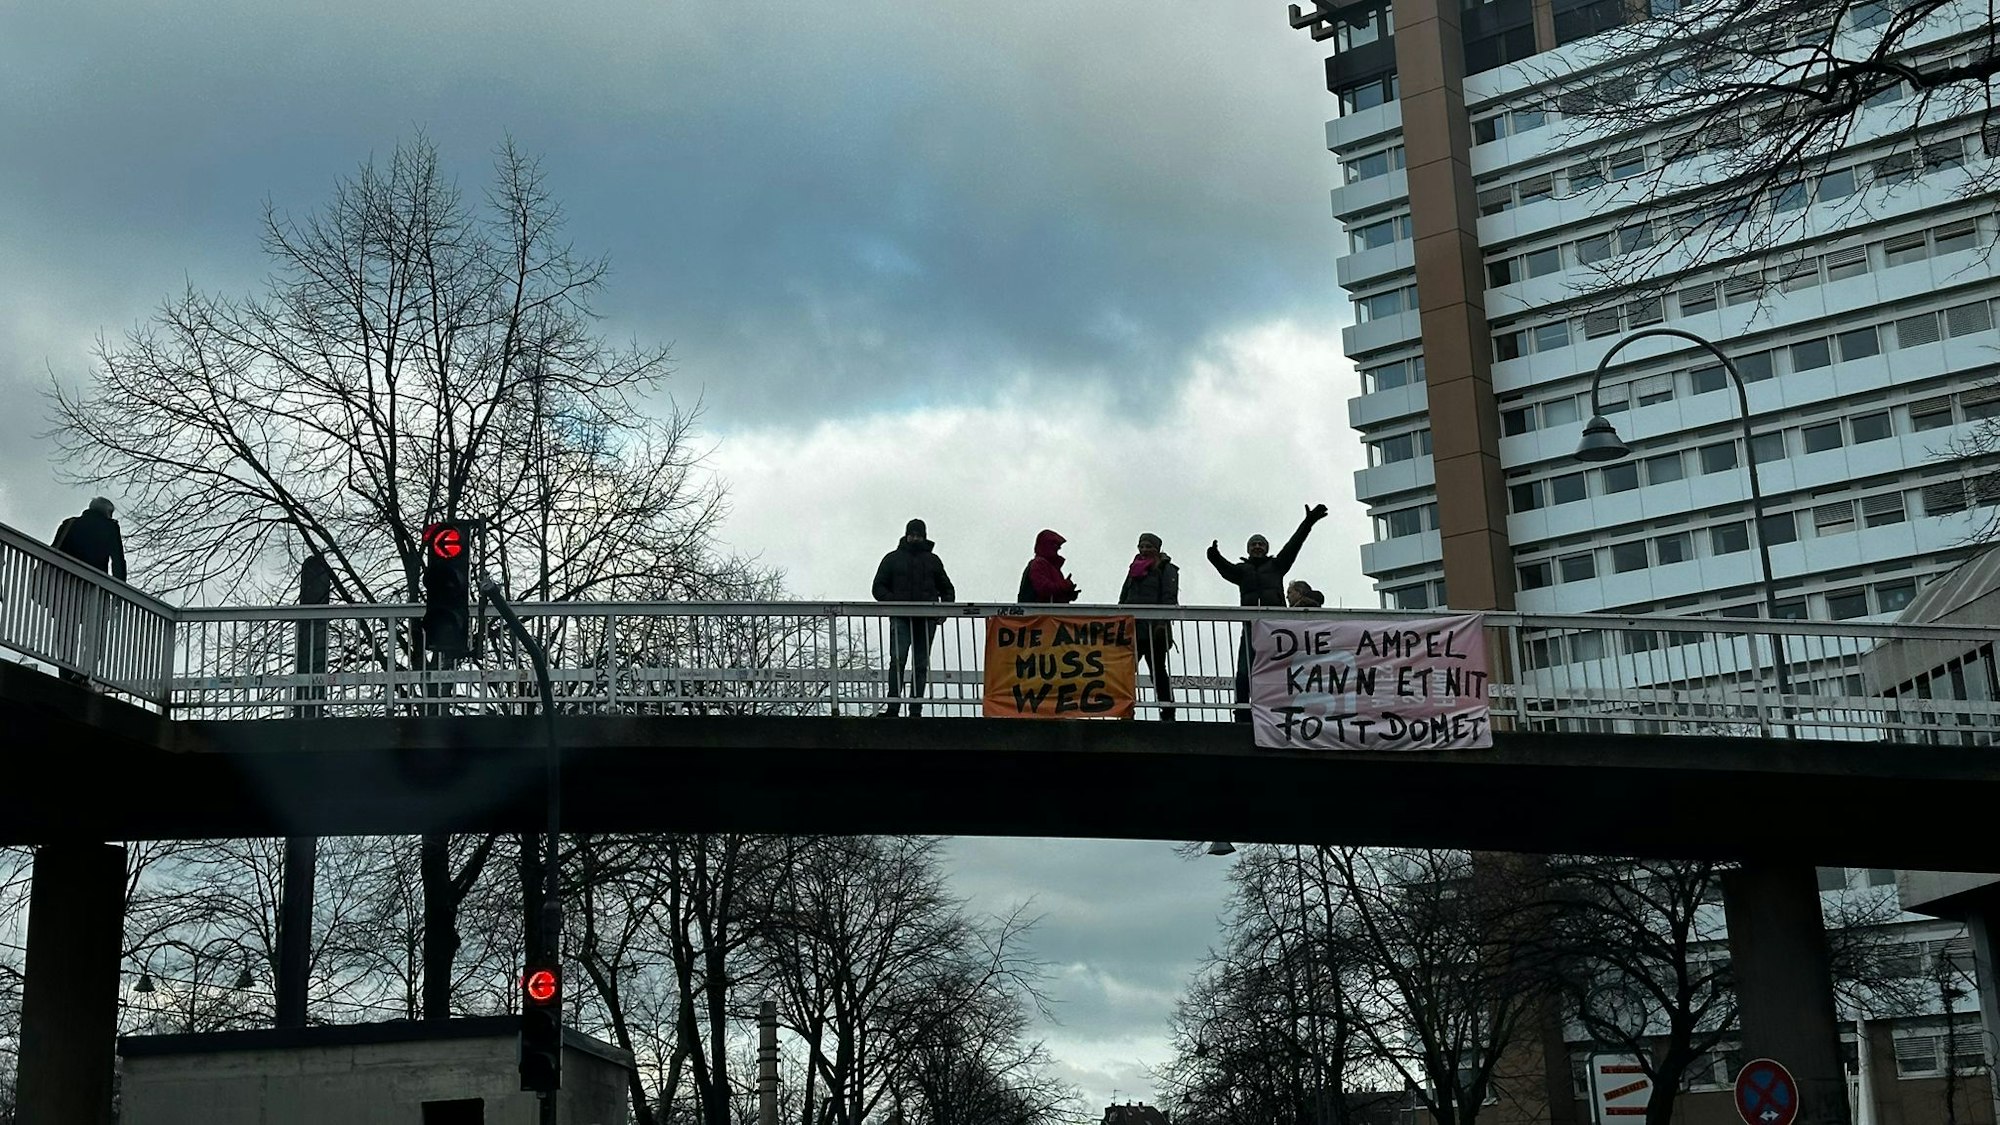 Menschen auf einer Brücke zeigen Plakate.